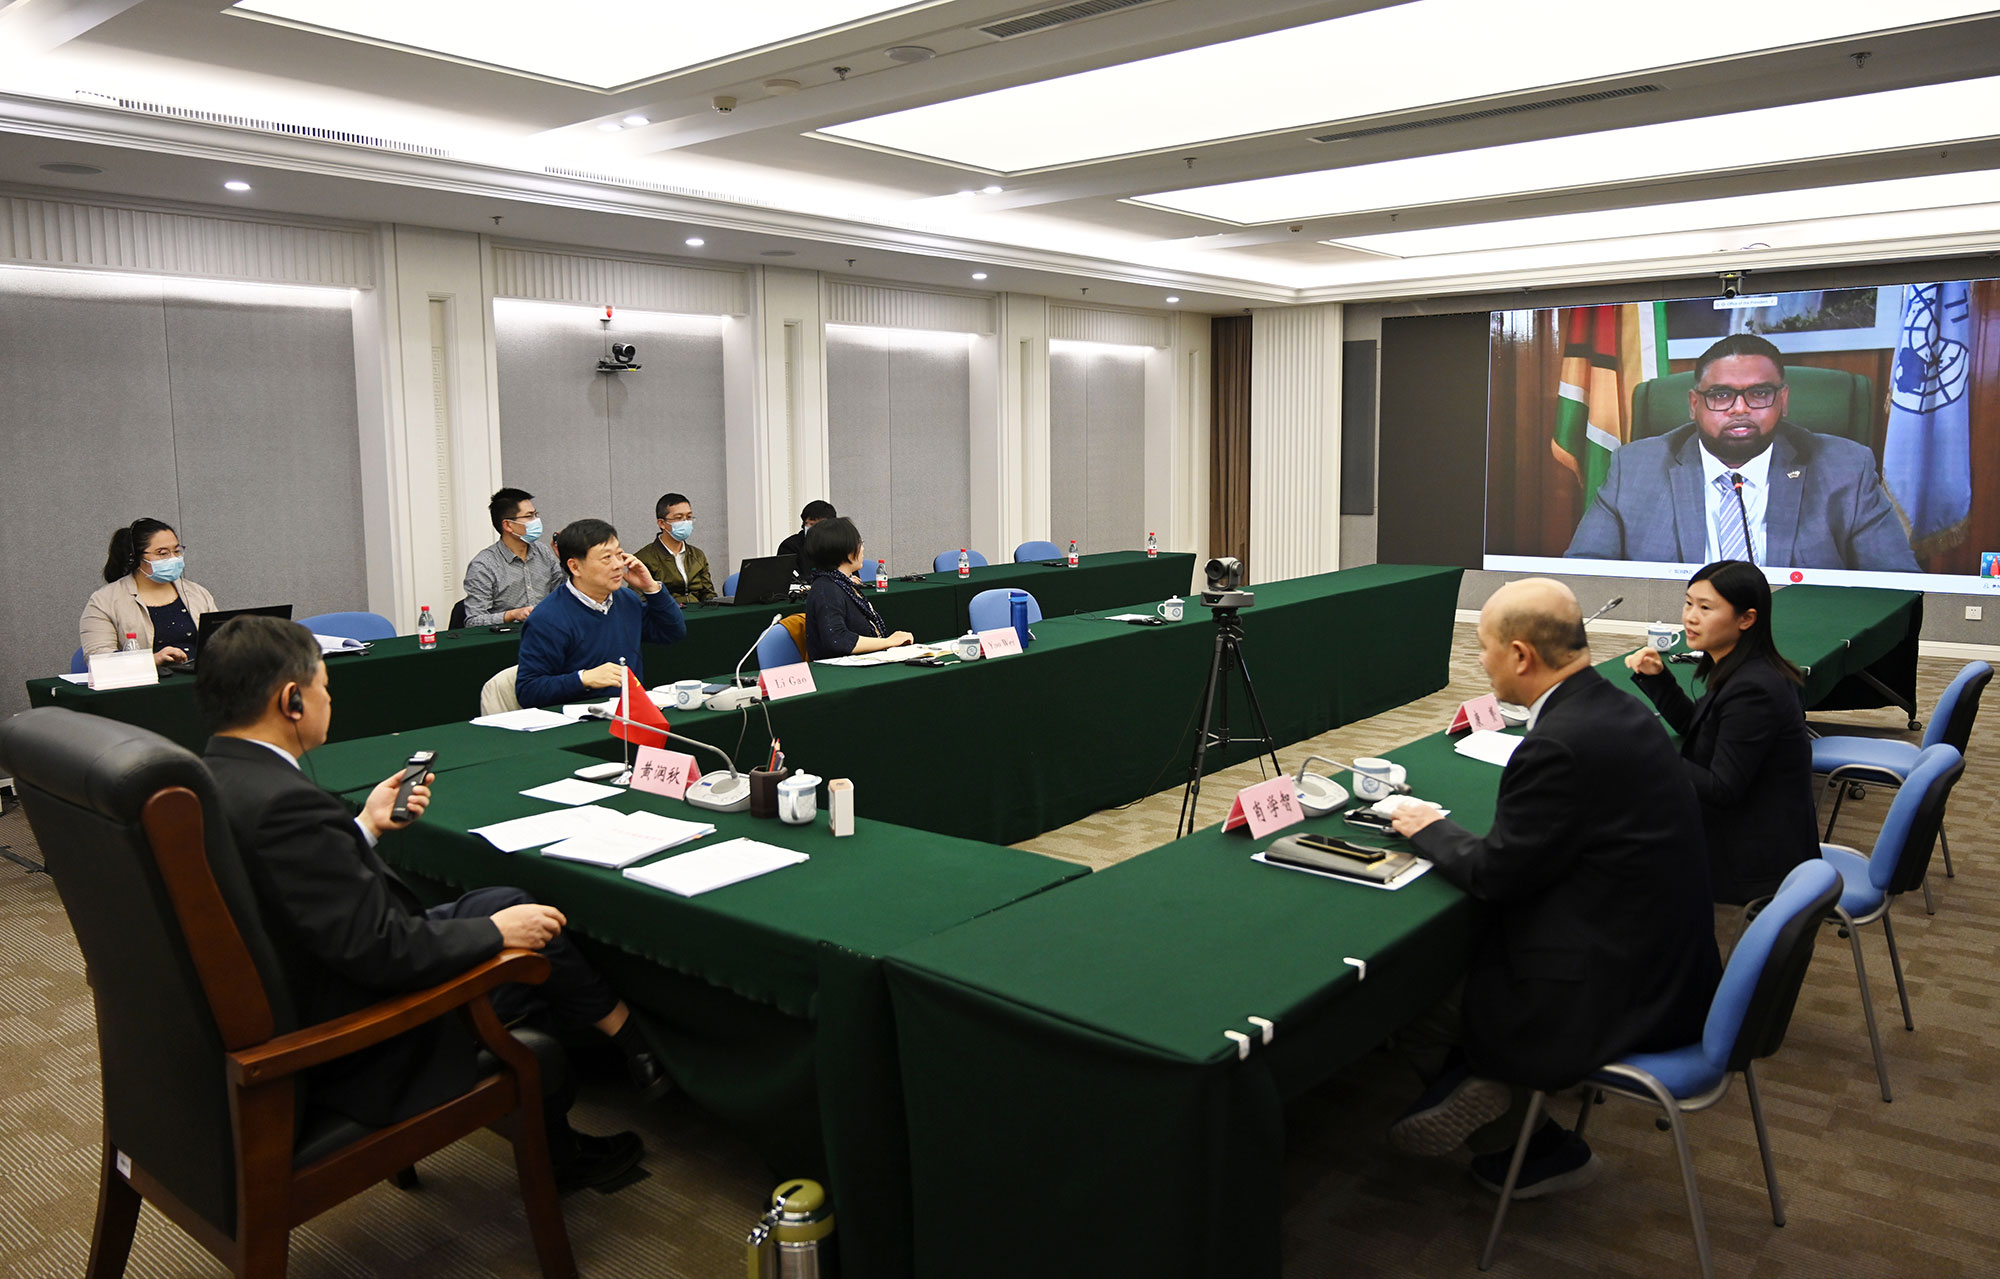 中国代表团出席国际原子能机构第五届21世纪核能部长级大会 - 中国核技术网